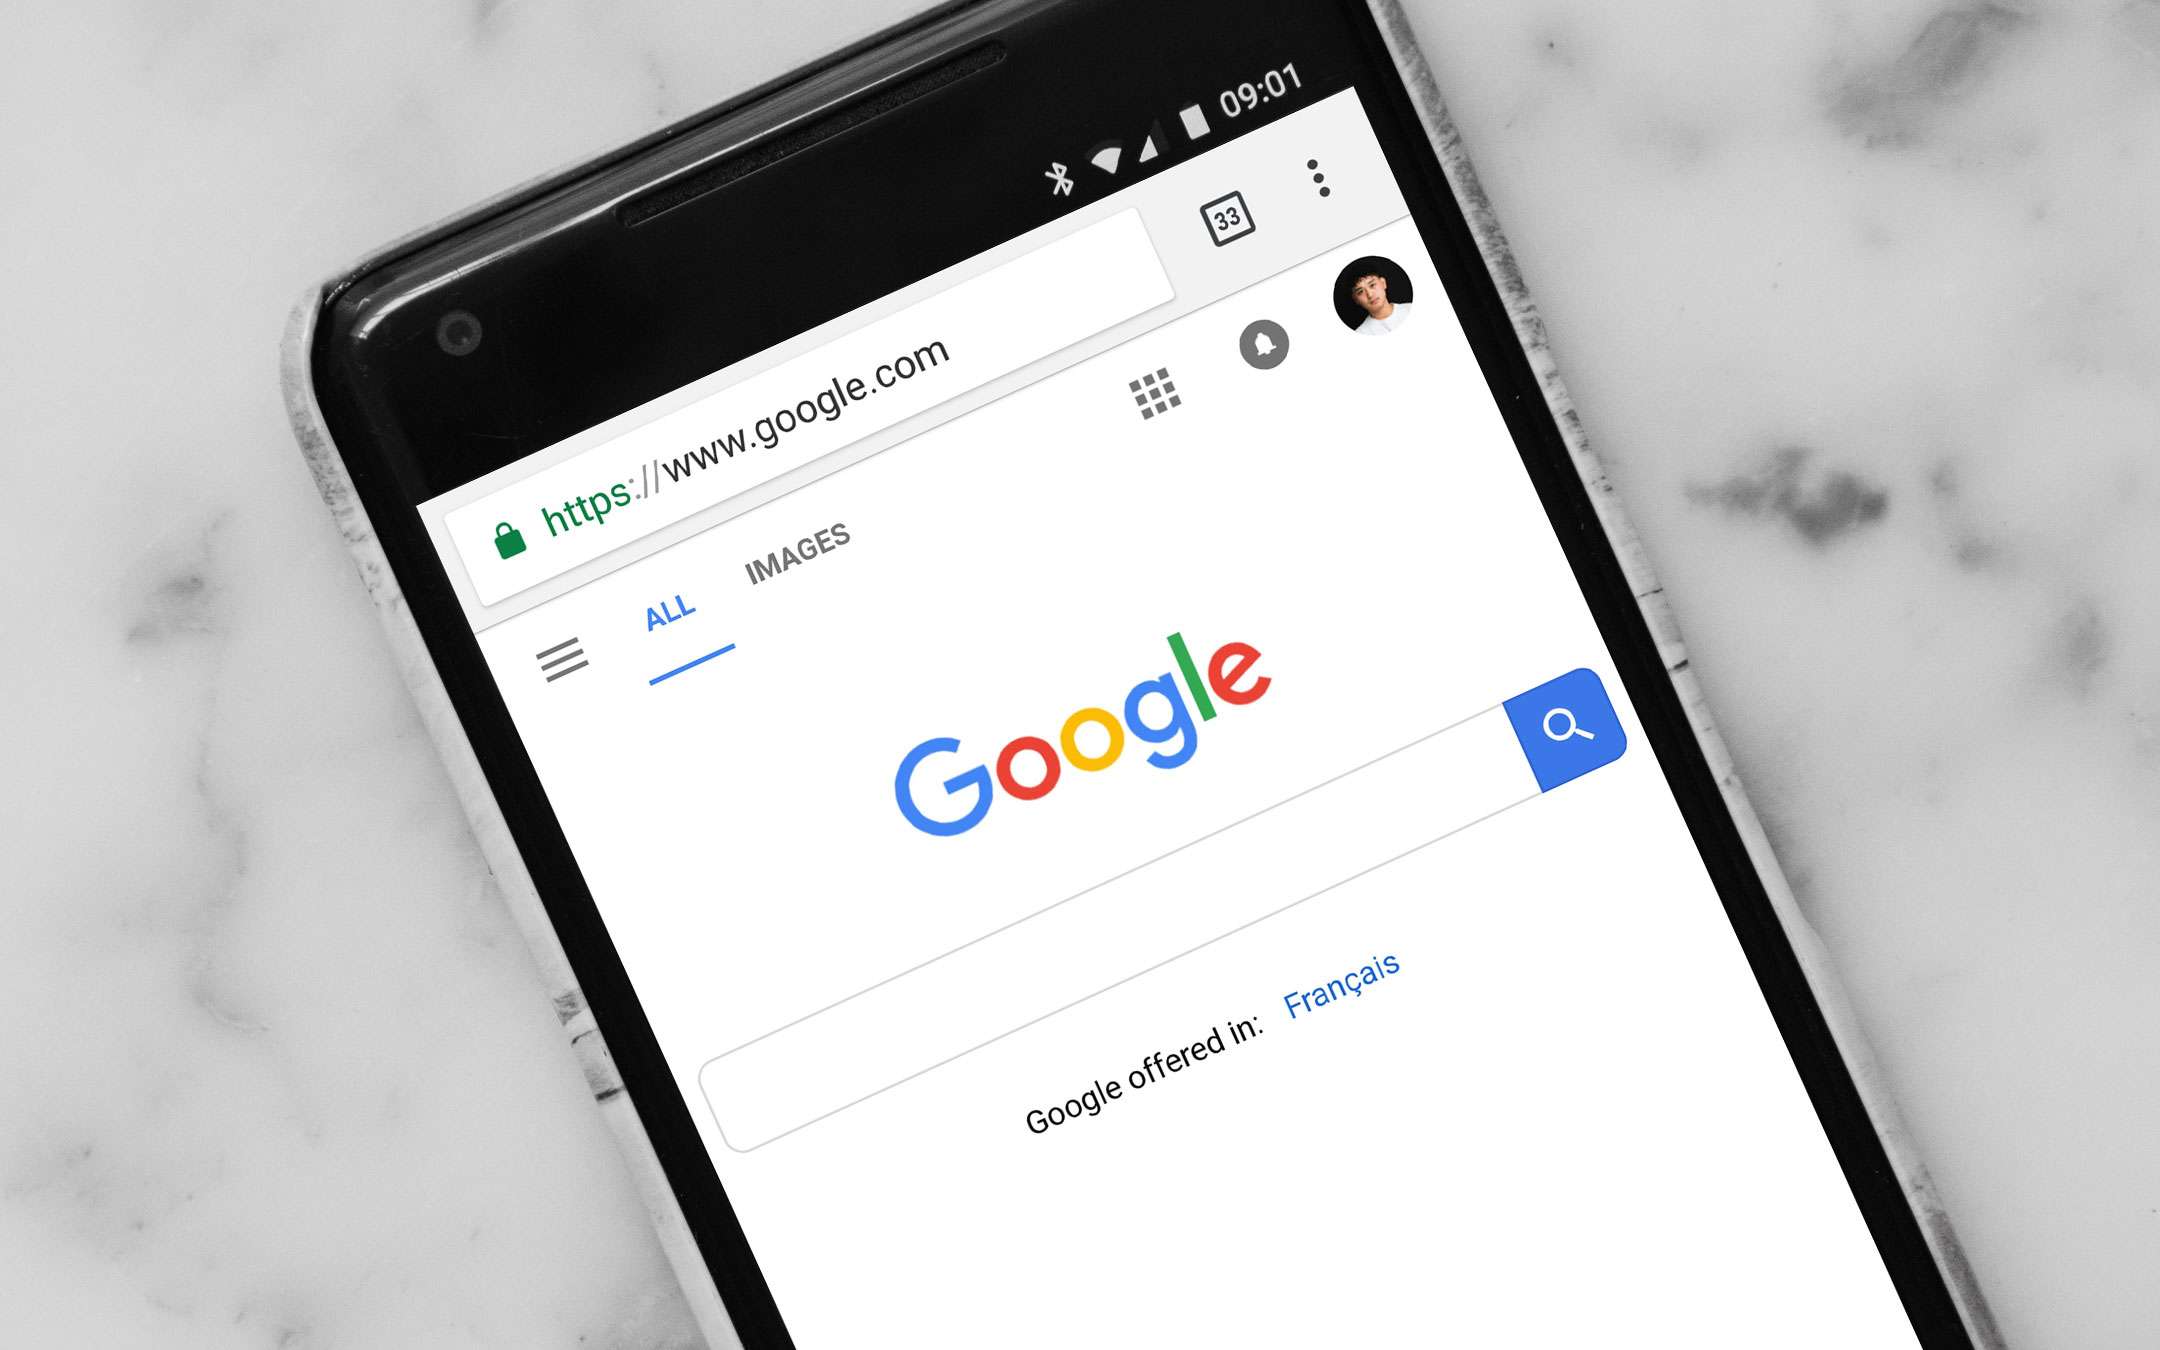 Chrome per Android diventa più intuitivo